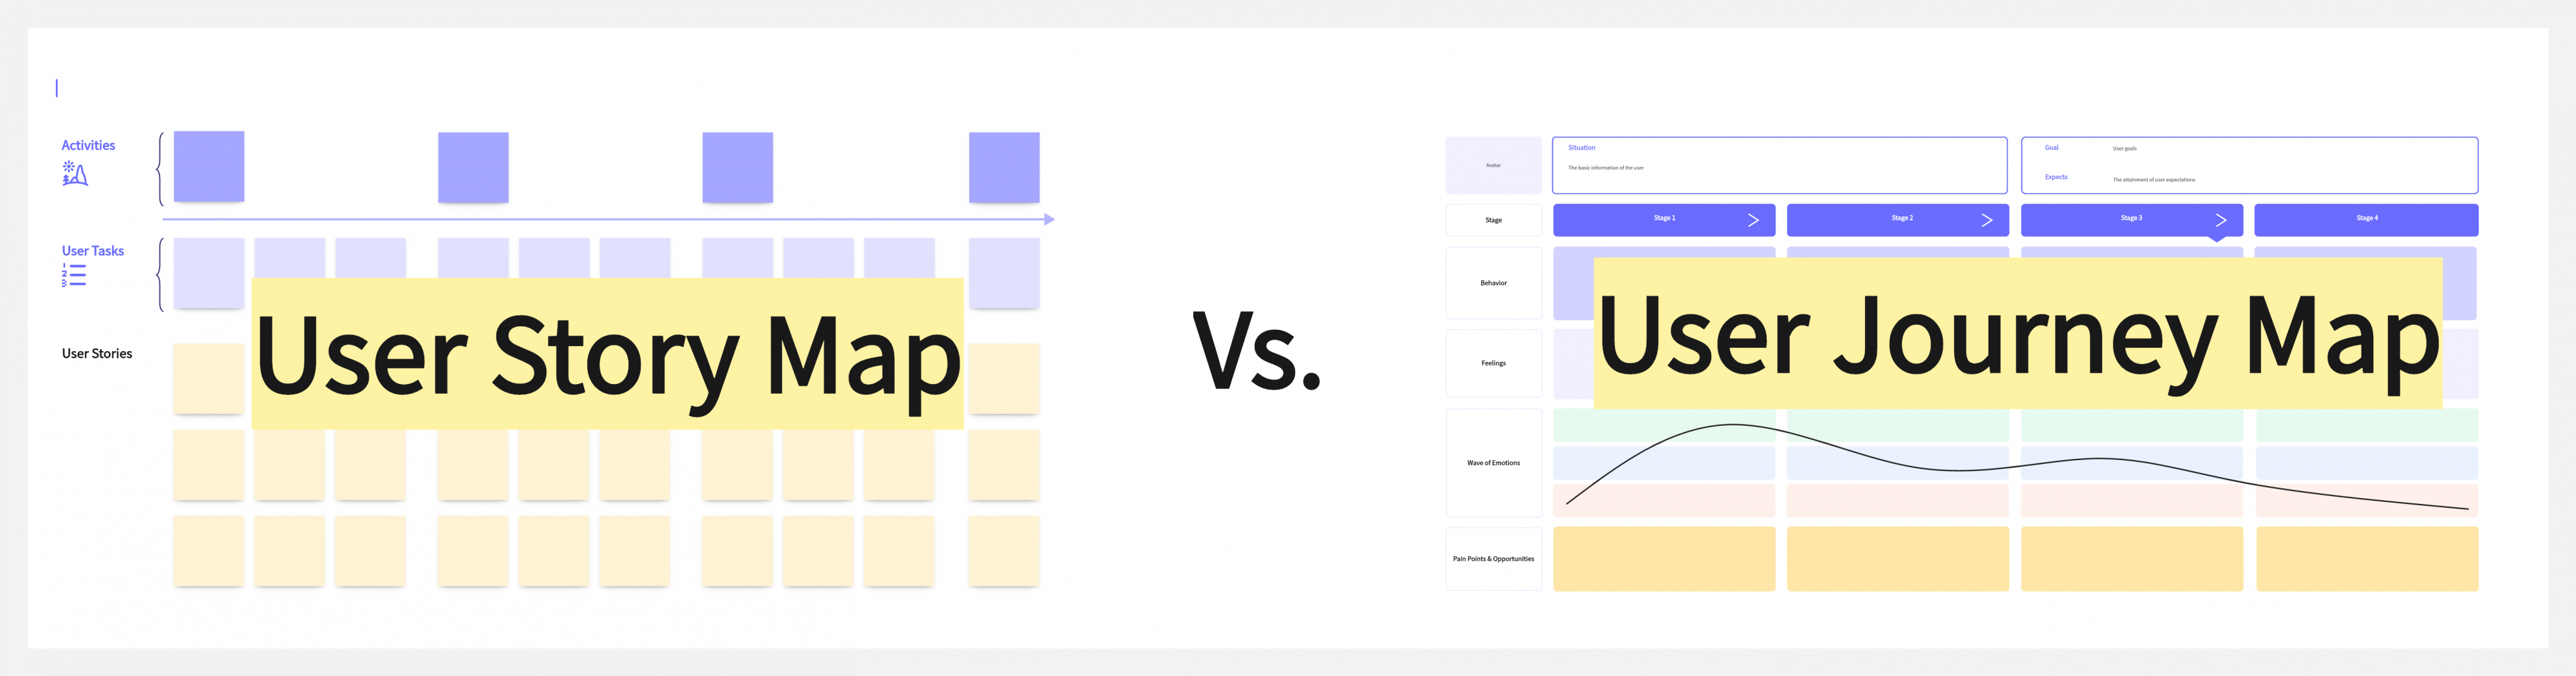 user story map vs user journey map